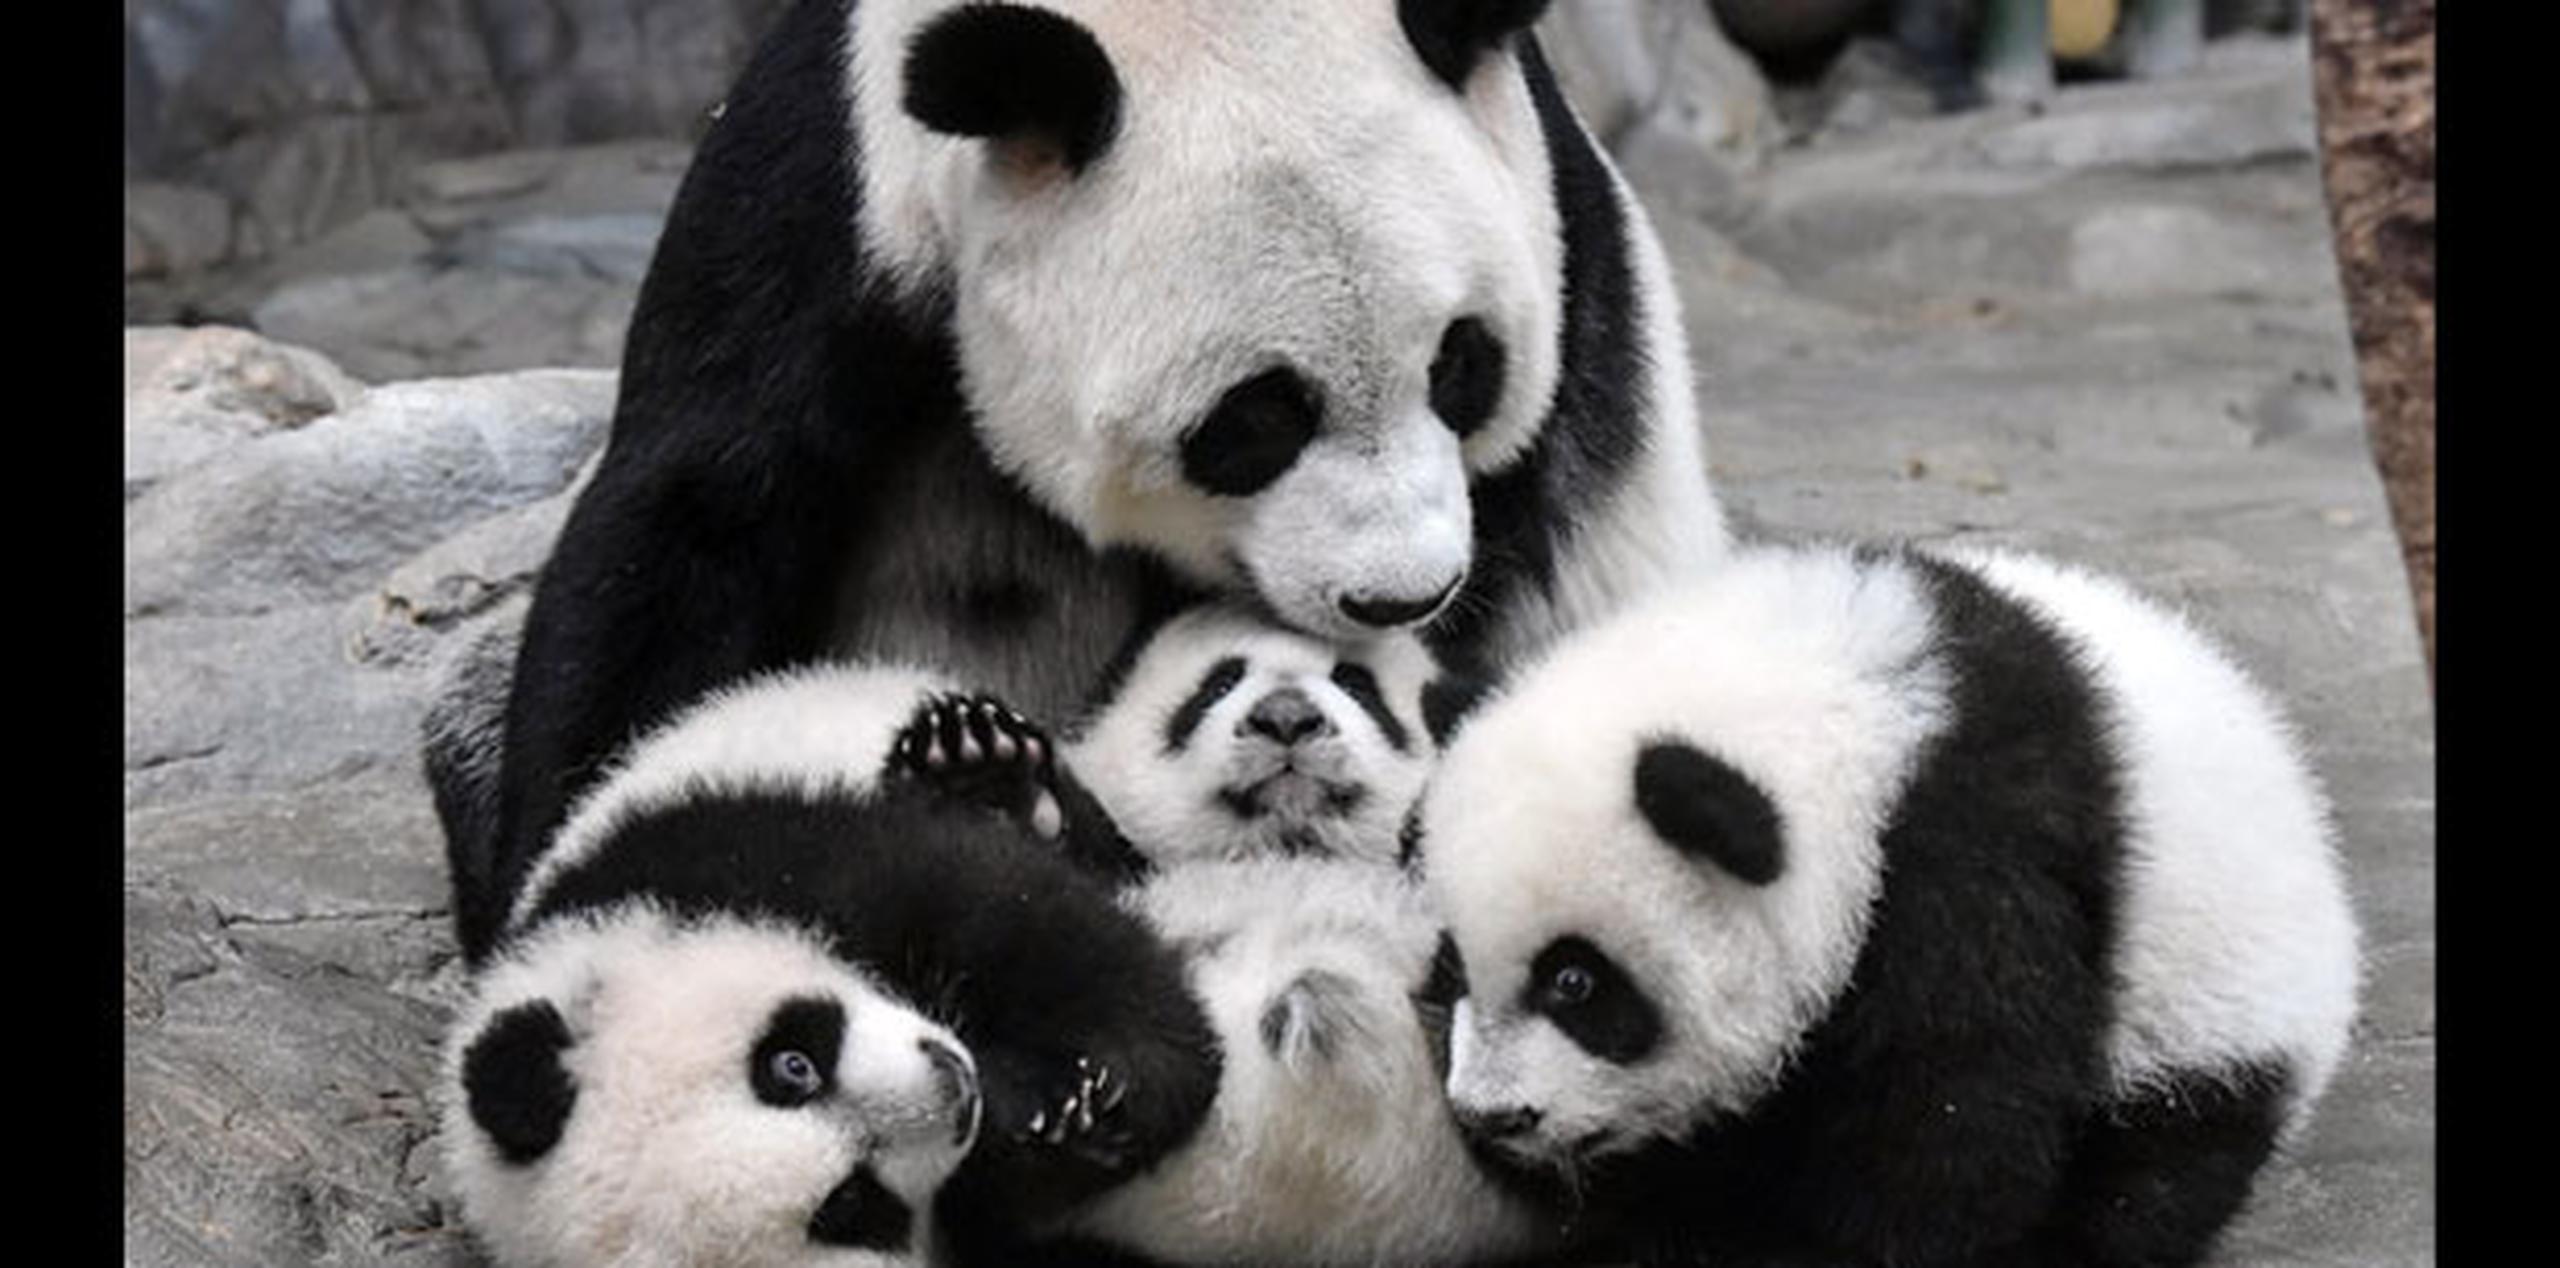 Los bebés ya se han convertido en las grandes estrellas del zoo Chimelong Safari Park de Cantón, desde su llegada al recinto un mes atrás, cuando se reencontraron con su madre Juxiao, la única panda gigante que ha dado luz a trillizos vivos. (AP)